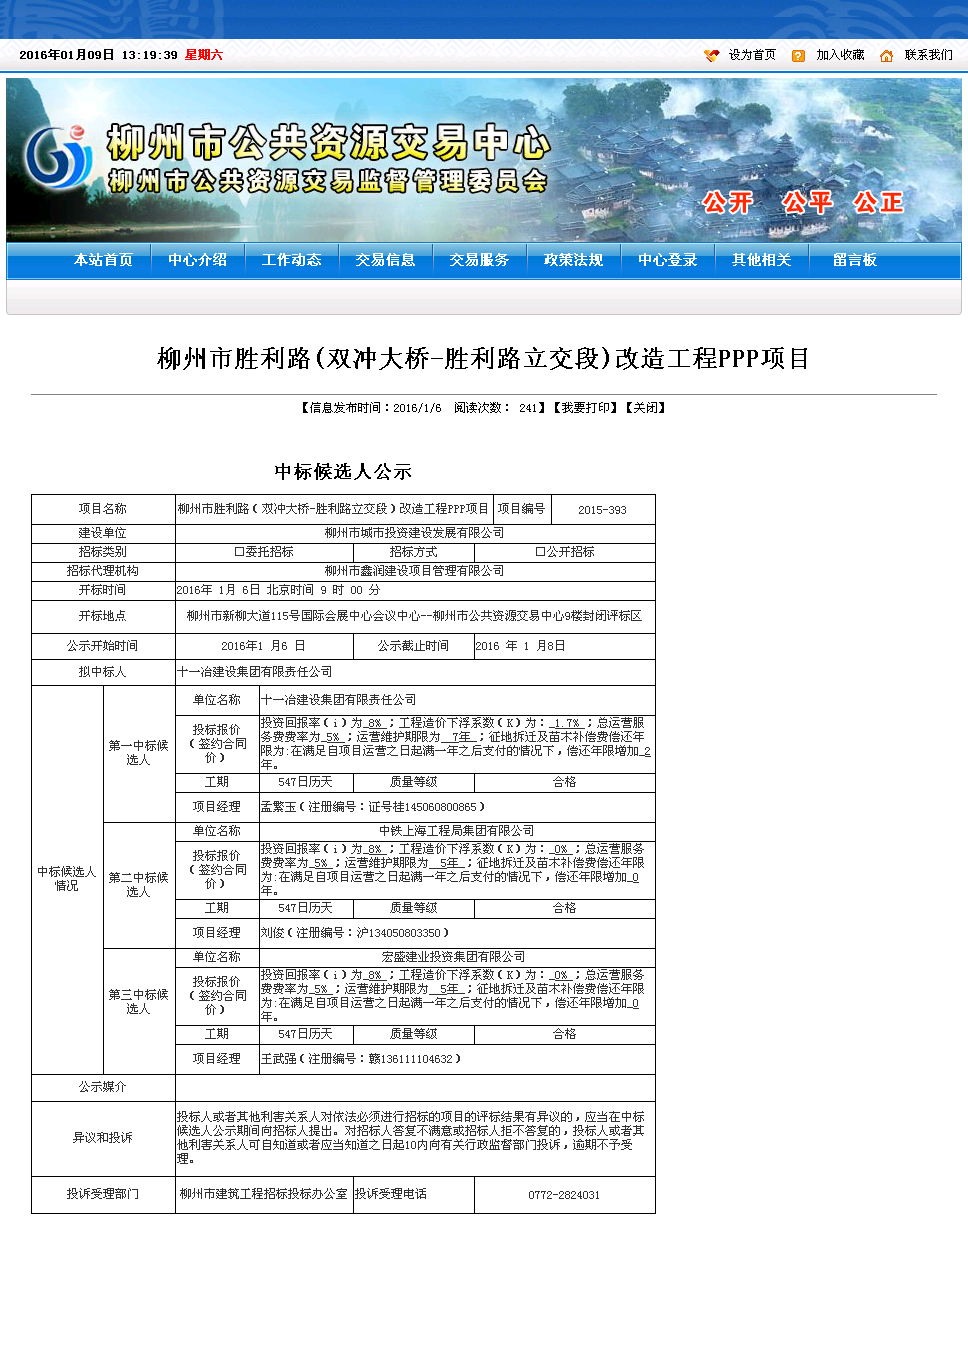 火狐电竞:柳州市医院医用耗材物流管理服务（SPD）采购项目的潜在投标人